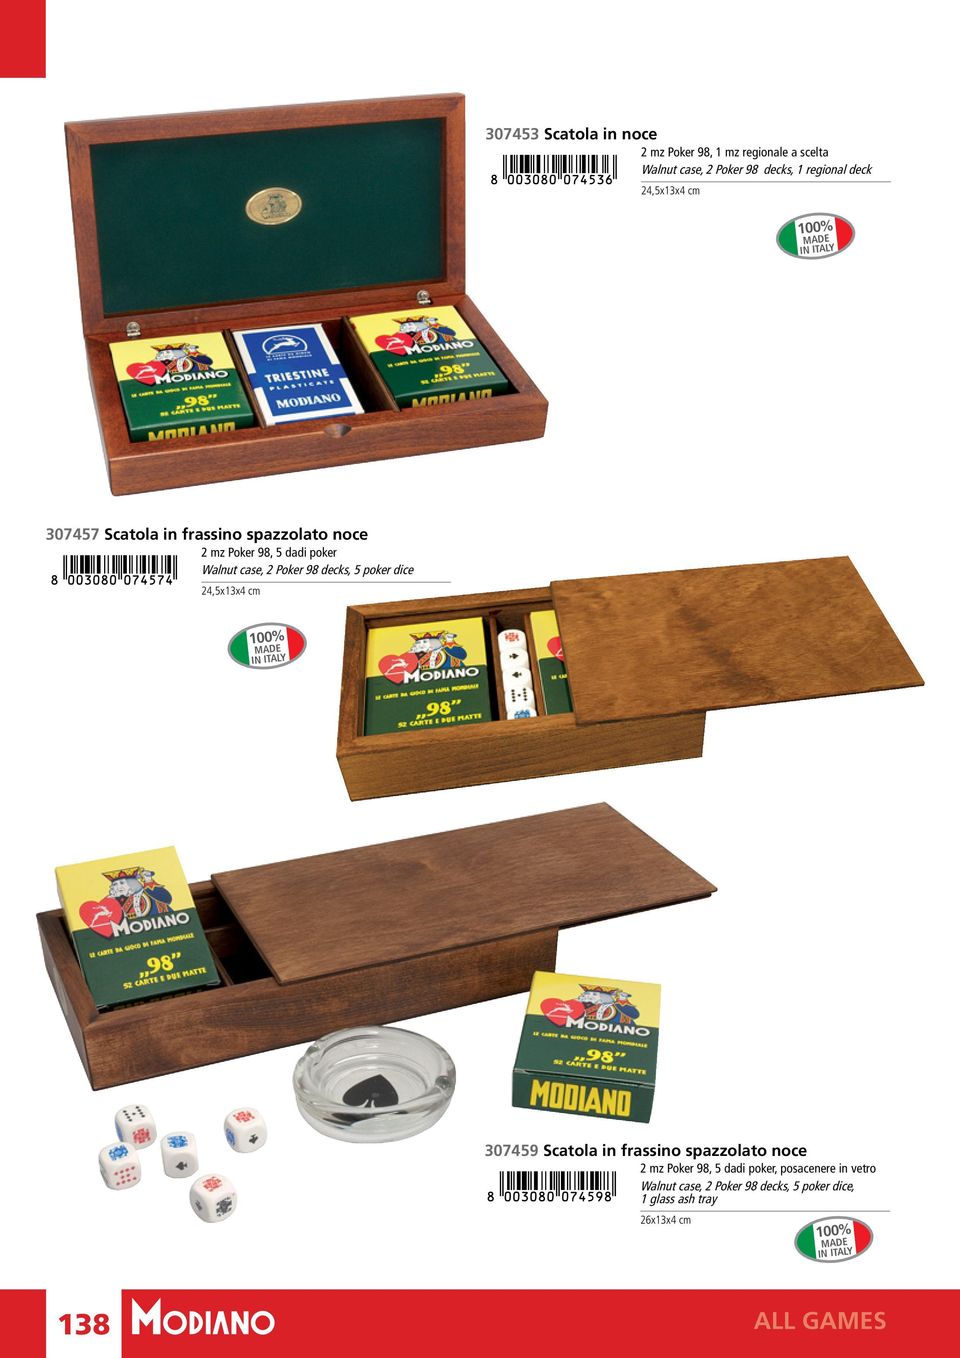 5 poker dice 24,5x13x4 cm 100% MADE IN ITALY 307459 Scatola in frassino spazzolato noce 2 mz Poker 98, 5 dadi poker,